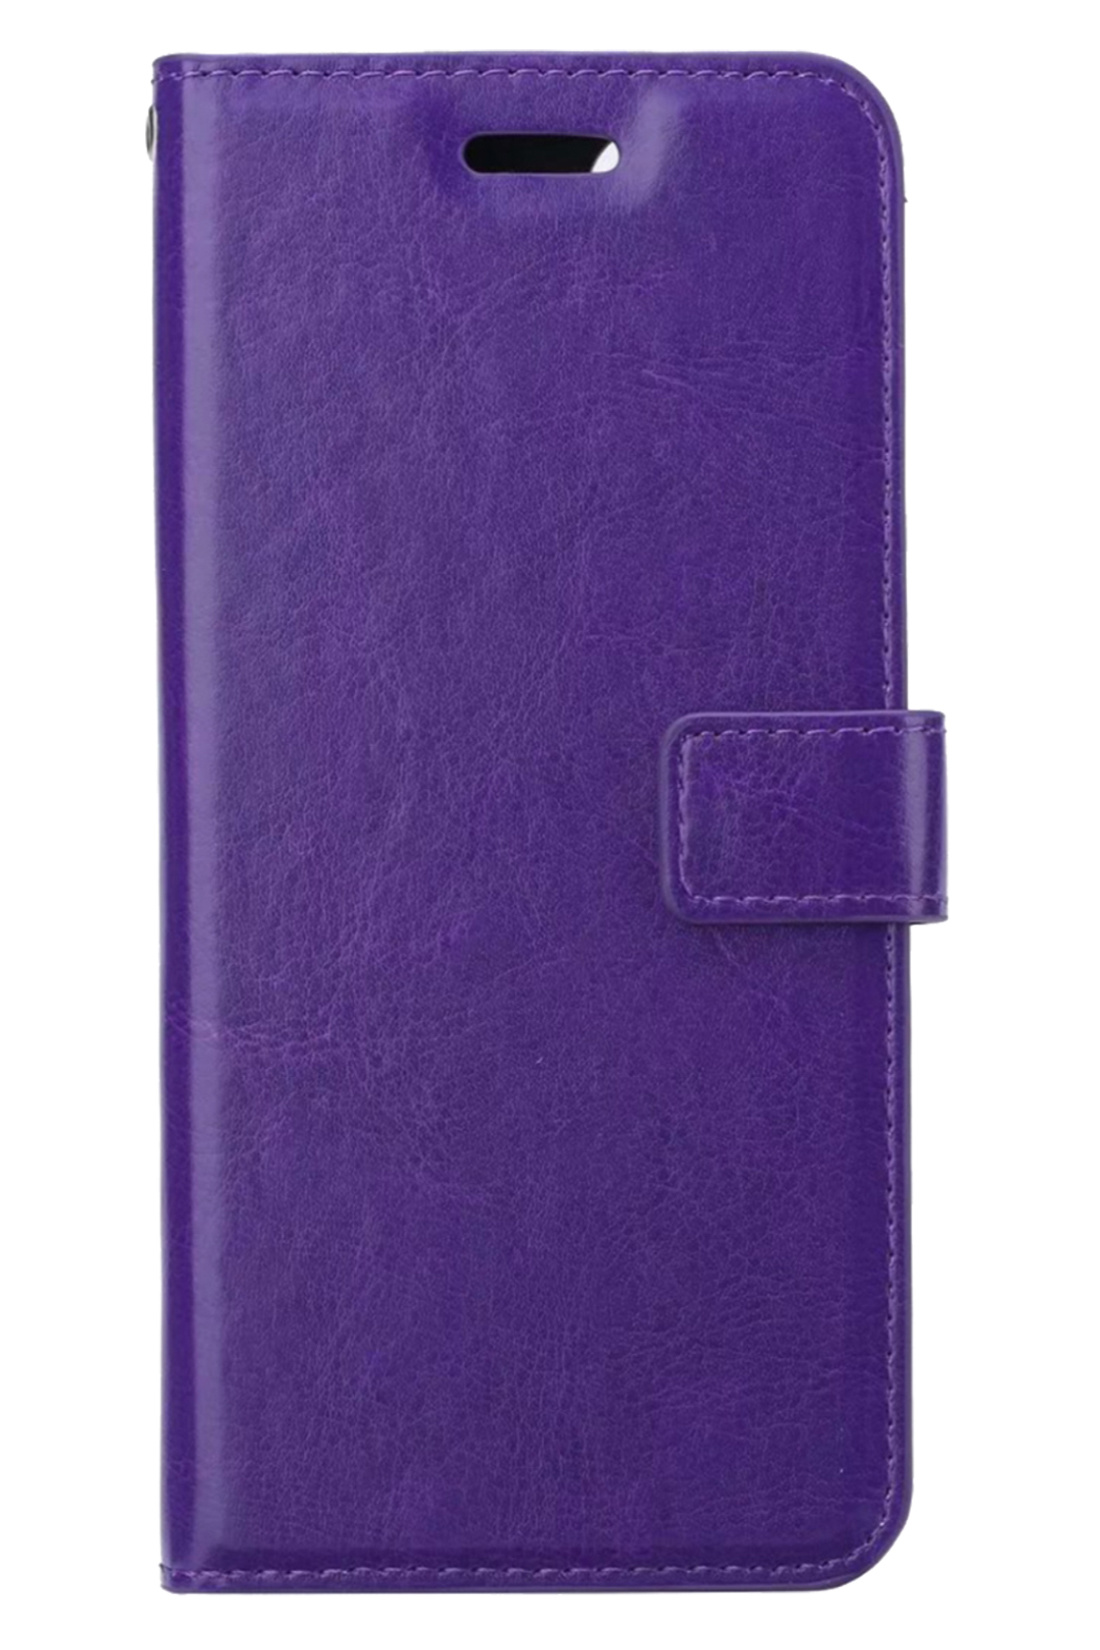 BASEY. OnePlus Nord CE 2 Lite Hoesje Bookcase Hoes Flip Case Book Cover - OnePlus Nord CE 2 Lite Hoes Book Case Hoesje - Paars